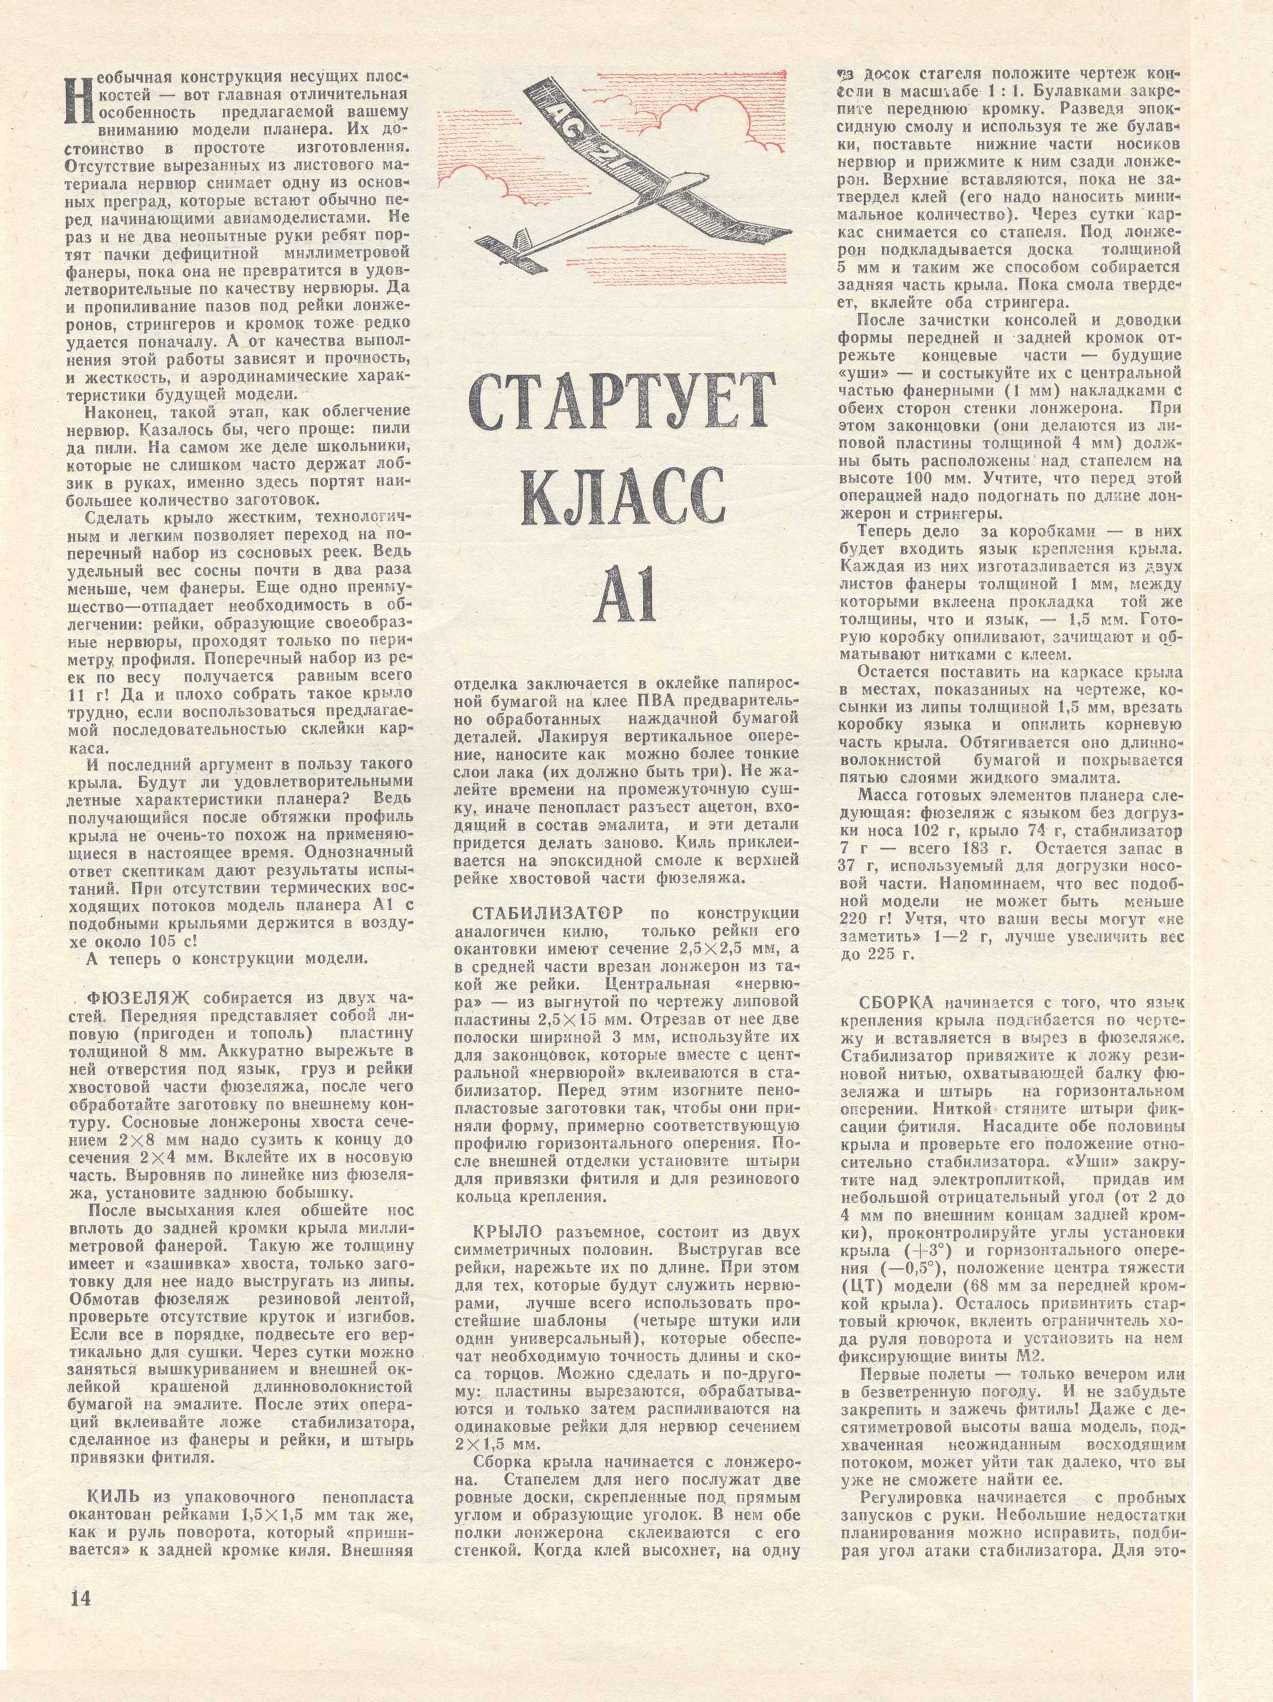 МК 4, 1982, 14 c.